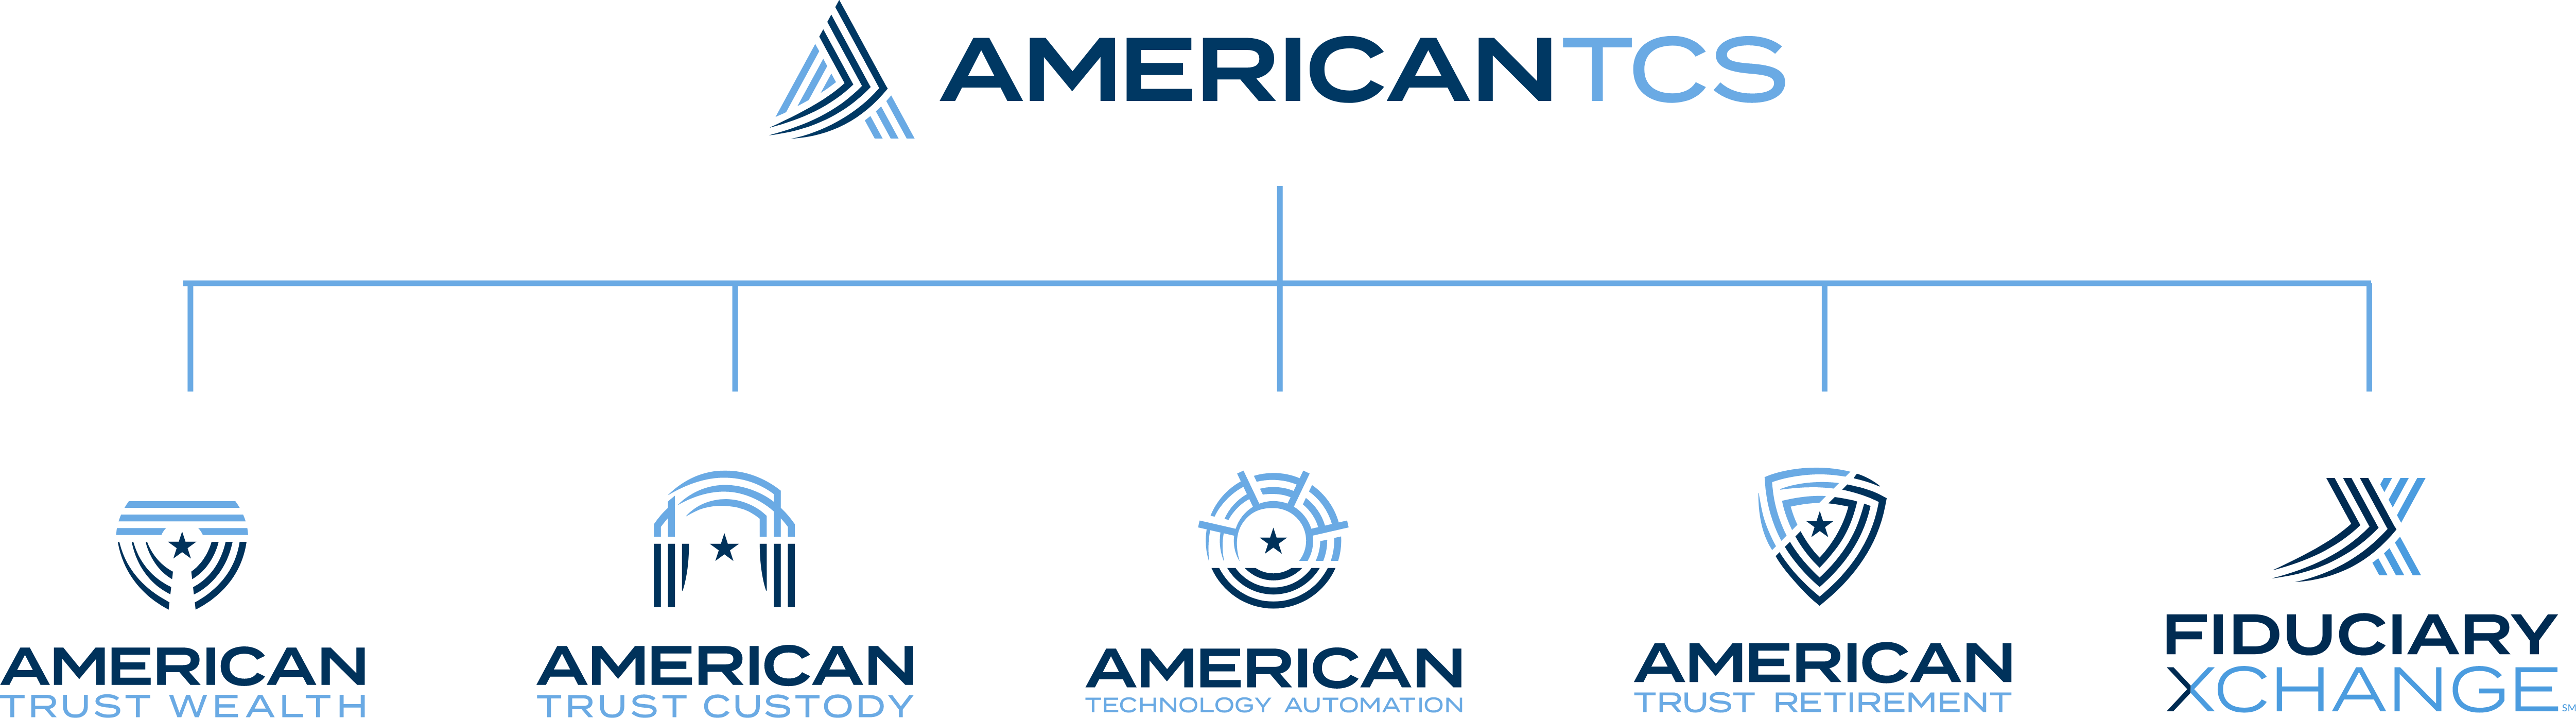 AmericanTCS Org Chart